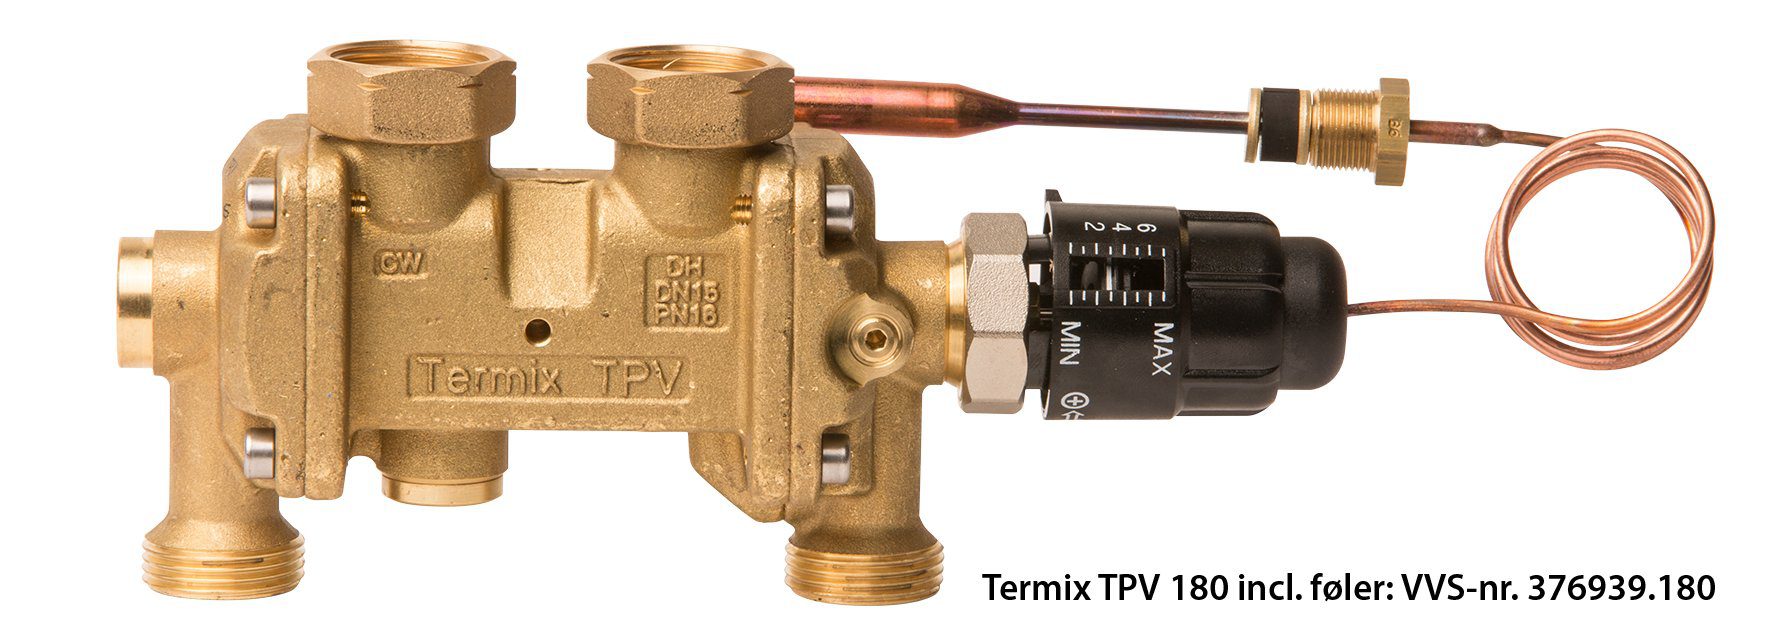 Produktbillede af Termix TPV 180 incl. føler